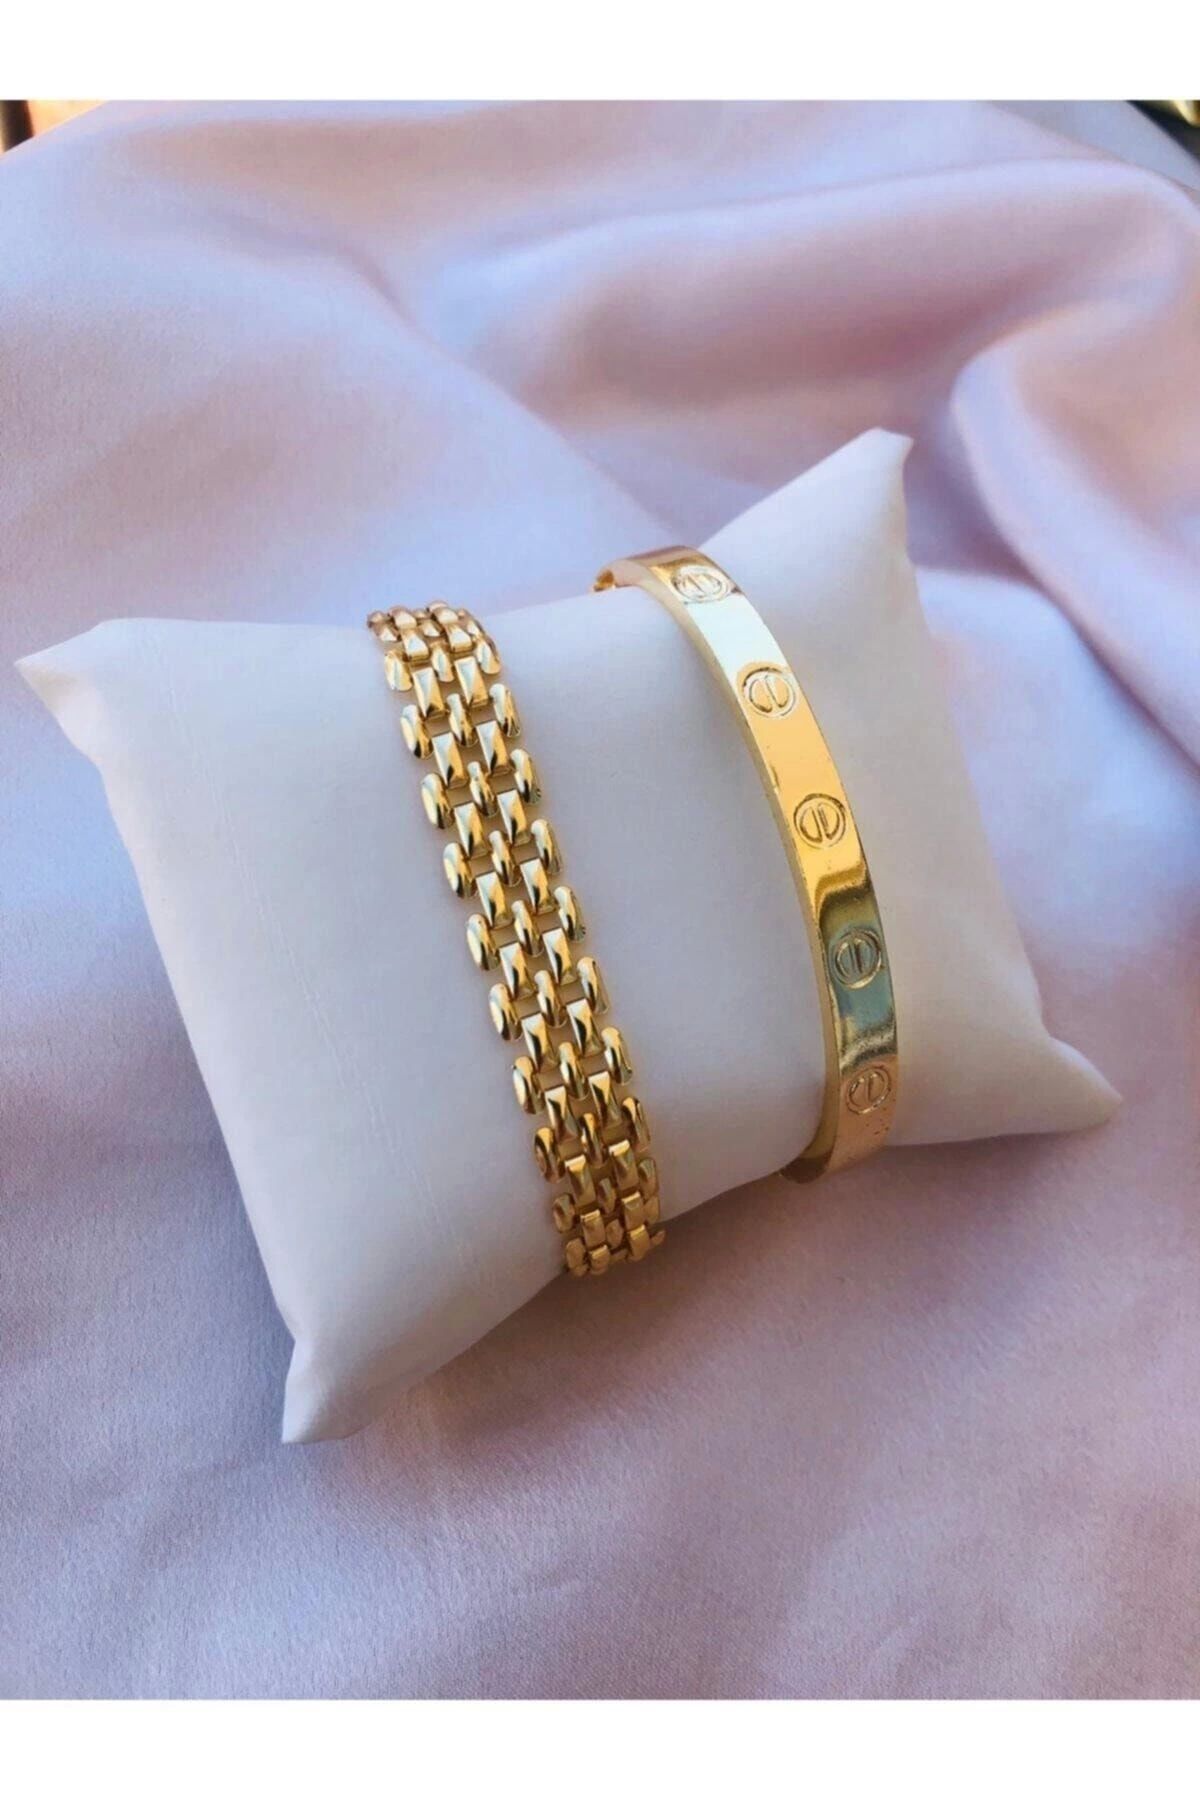 BERS AKSESUAR Kadın Gold Renk Altın Kaplama Saat Yanı Kombin Bileklik Seti